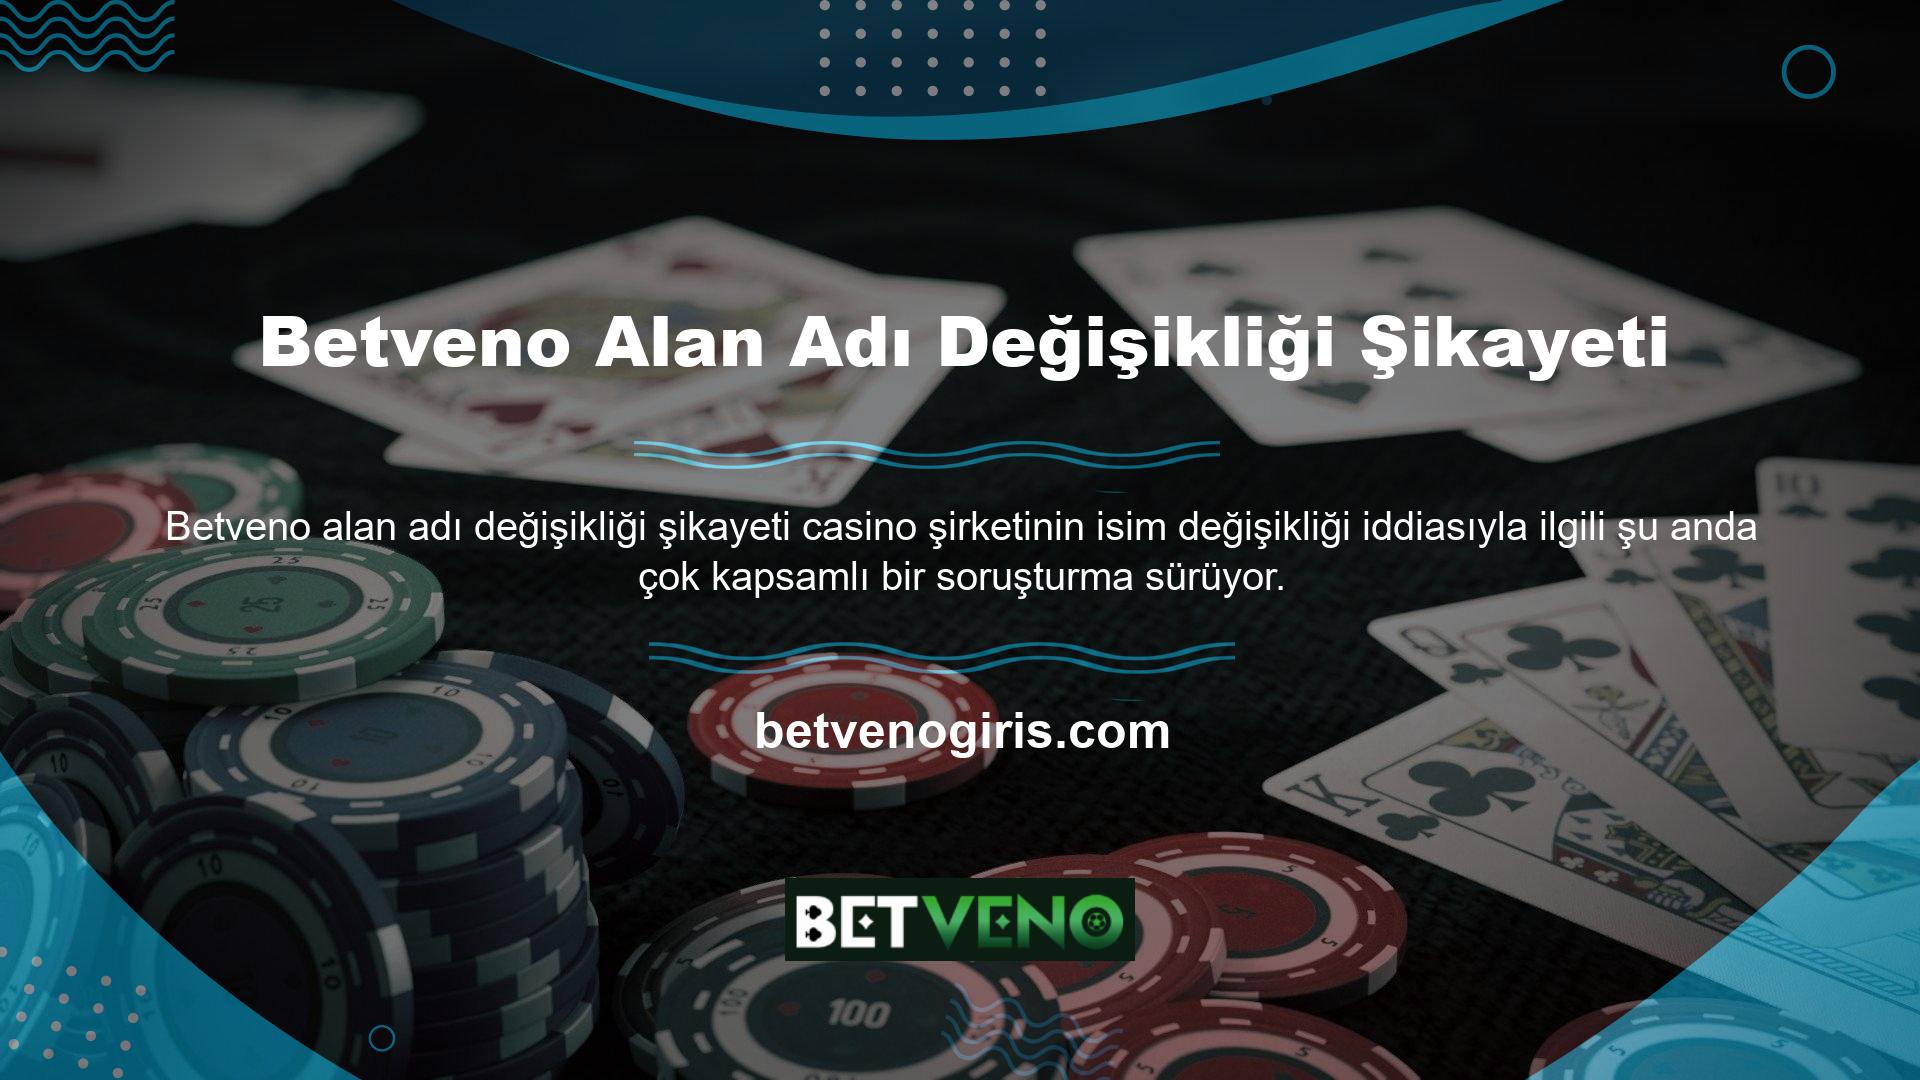 Bu casino platformunun adlandırılmasının yasa dışı olması nedeniyle web sitesinin alan adı değiştirildi